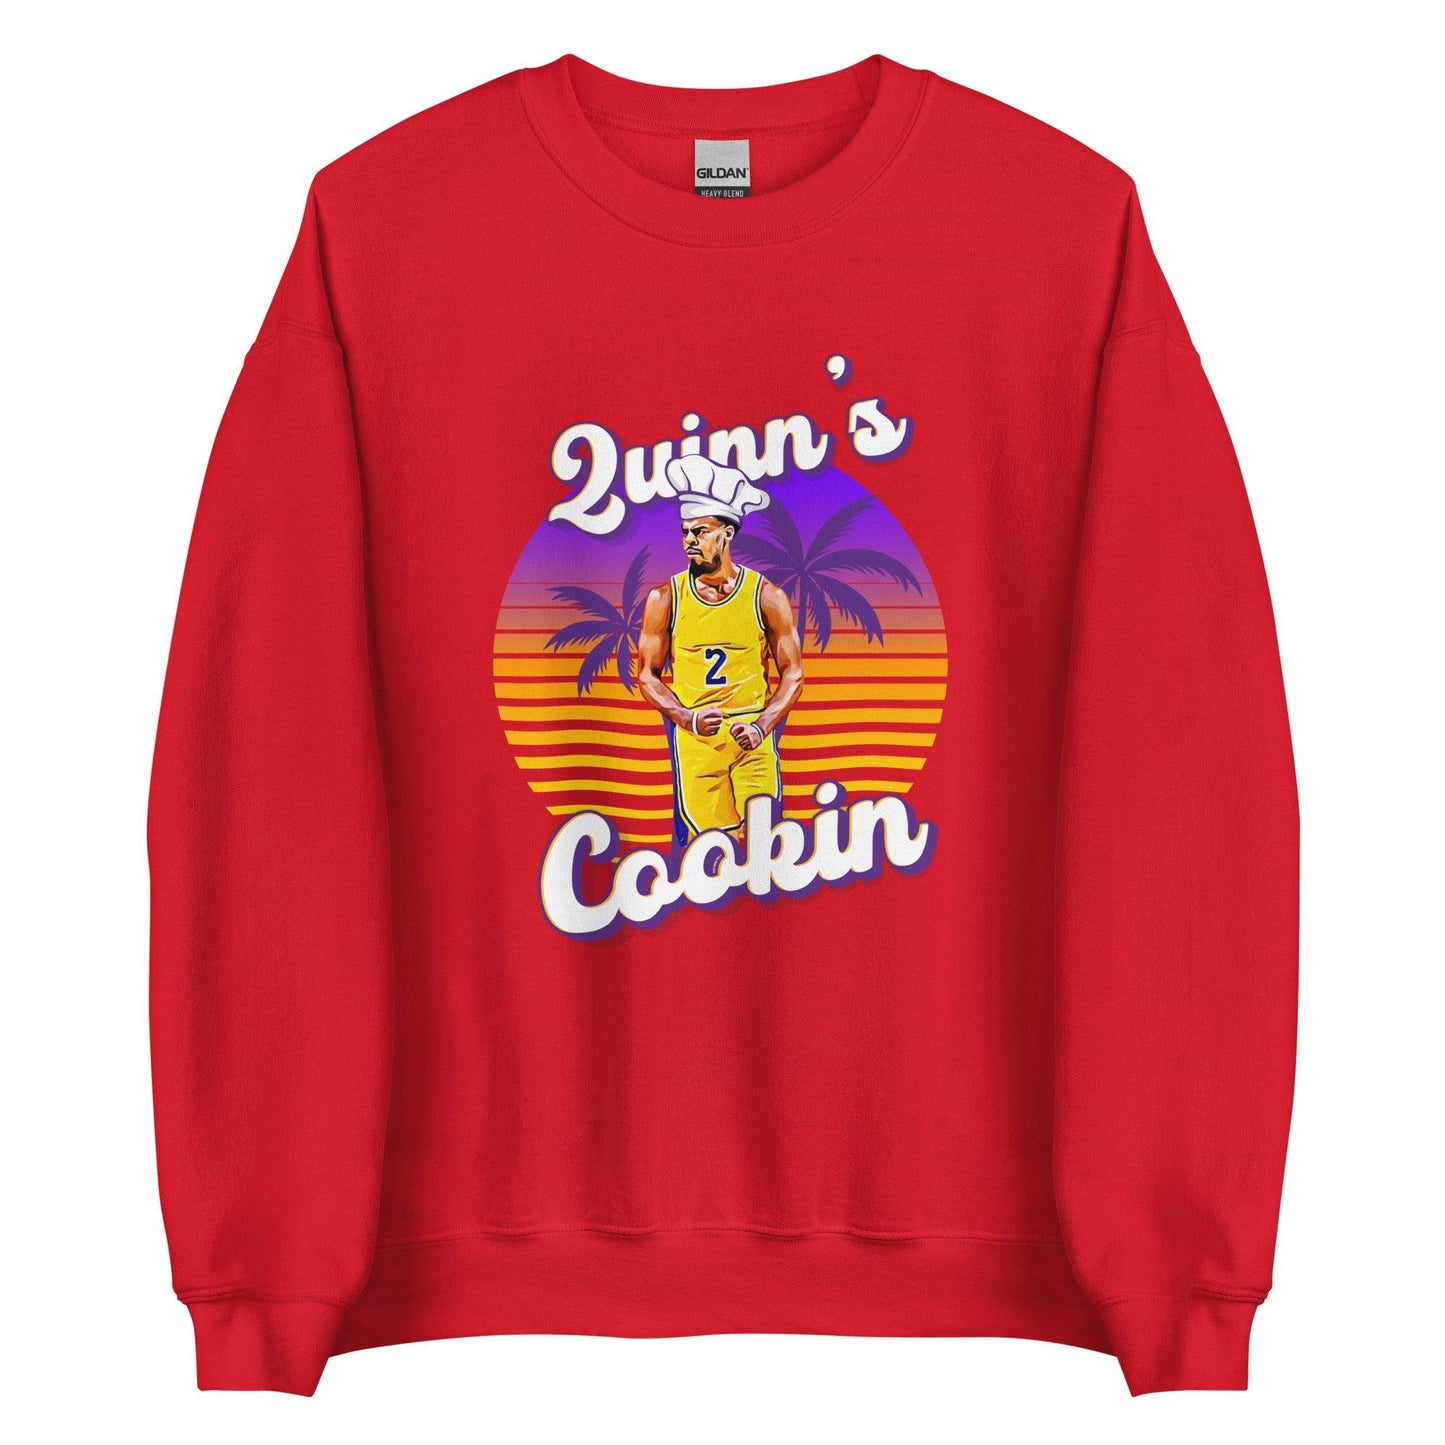 Quinn Cook "Quinns Cookin" Sweatshirt - Fan Arch